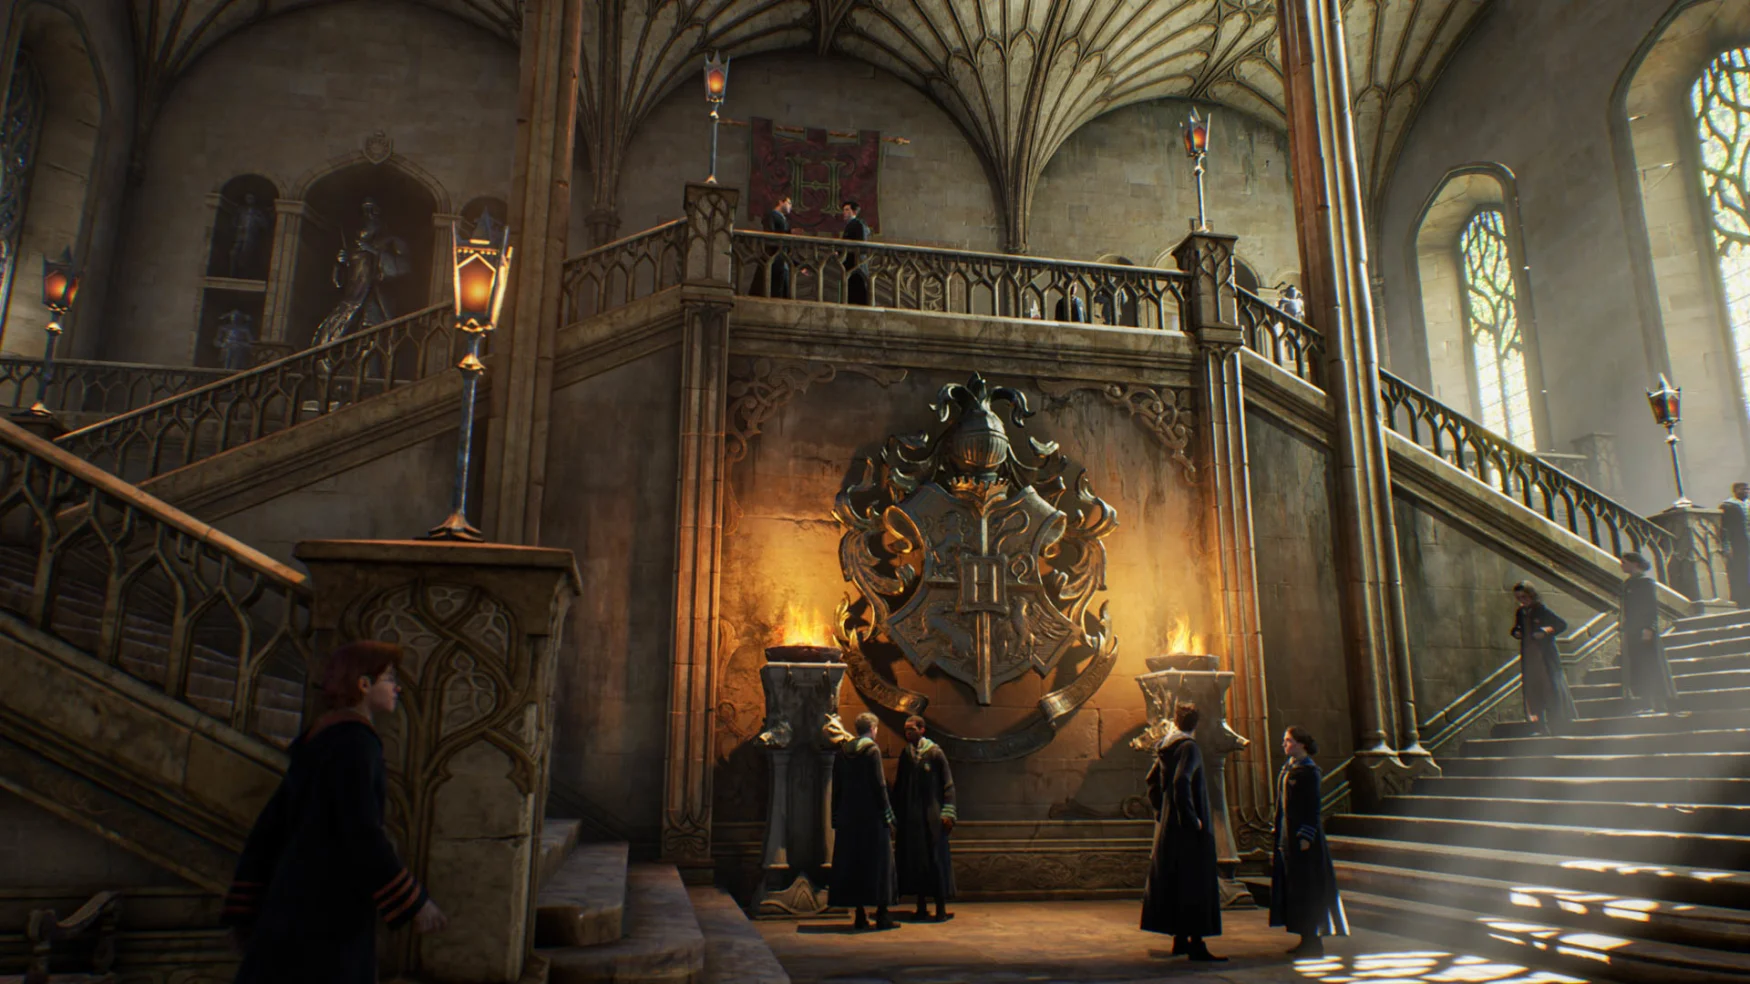 El salón principal de Hogwarts llena el espacio, con estudiantes que se filtran por escaleras gemelas, el escudo de la escuela es grande e iluminado por dos fuegos sobre pedestales.